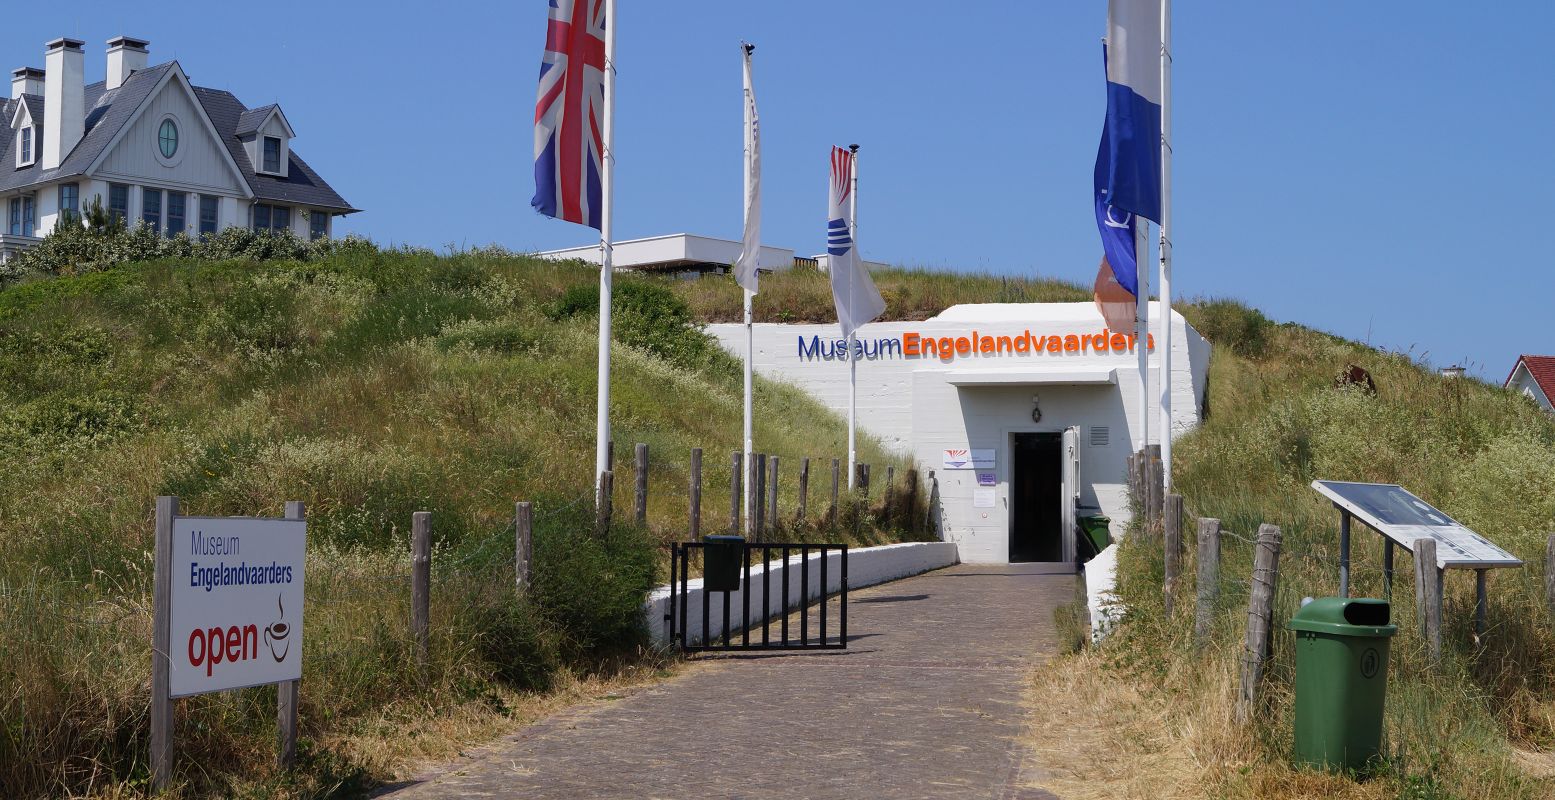 Museum Engelandvaarders zit in een ondergrondse bunker, onderdeel van de Atlantikwall. Foto: DagjeWeg.NL